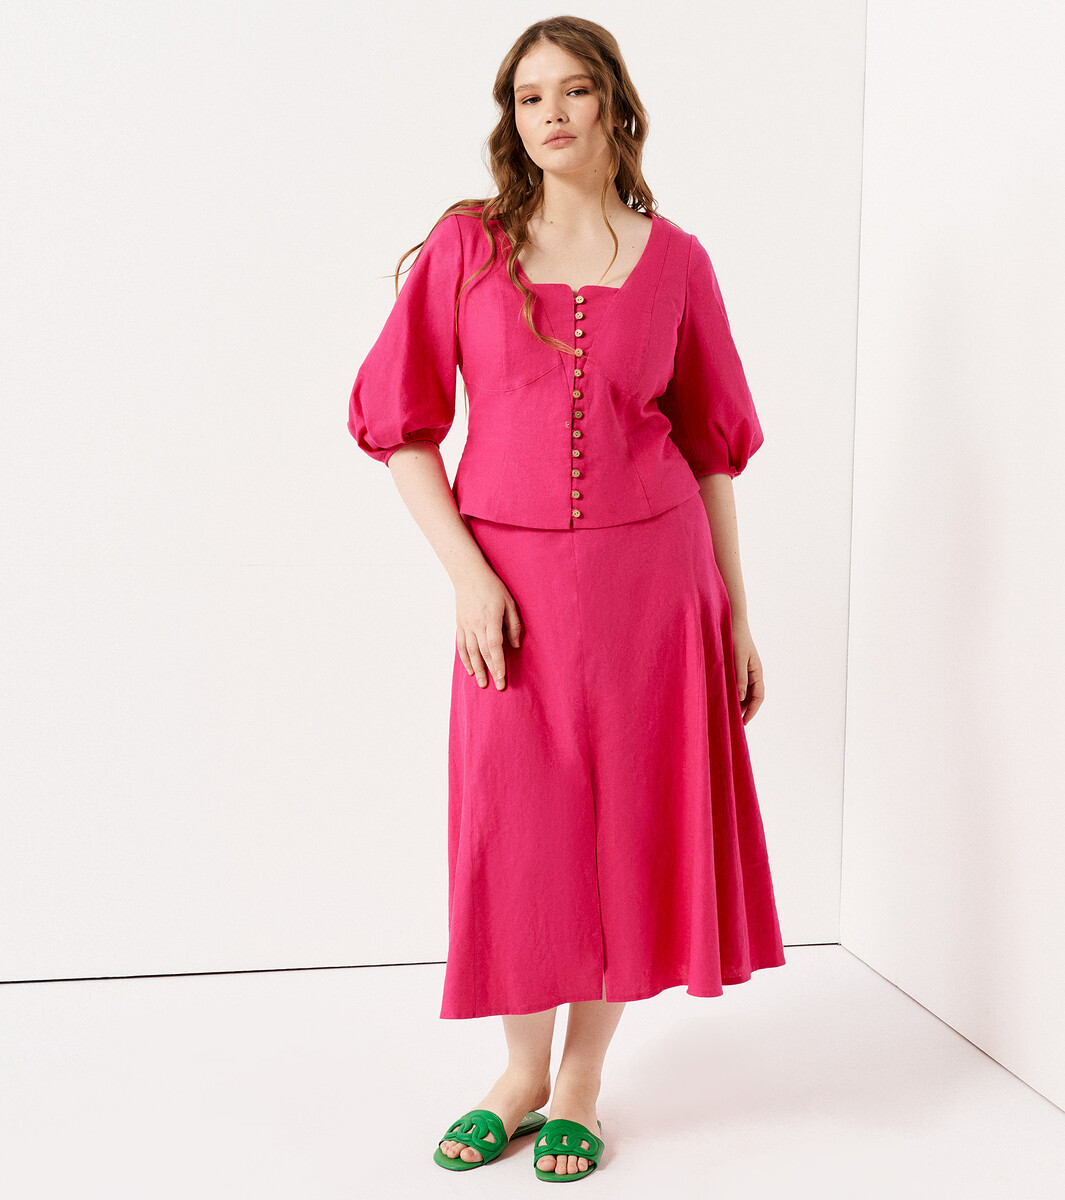 Комплект женский (блузка, юбка) Panda, размер 46, цвет розовый 02528540 - фото 1